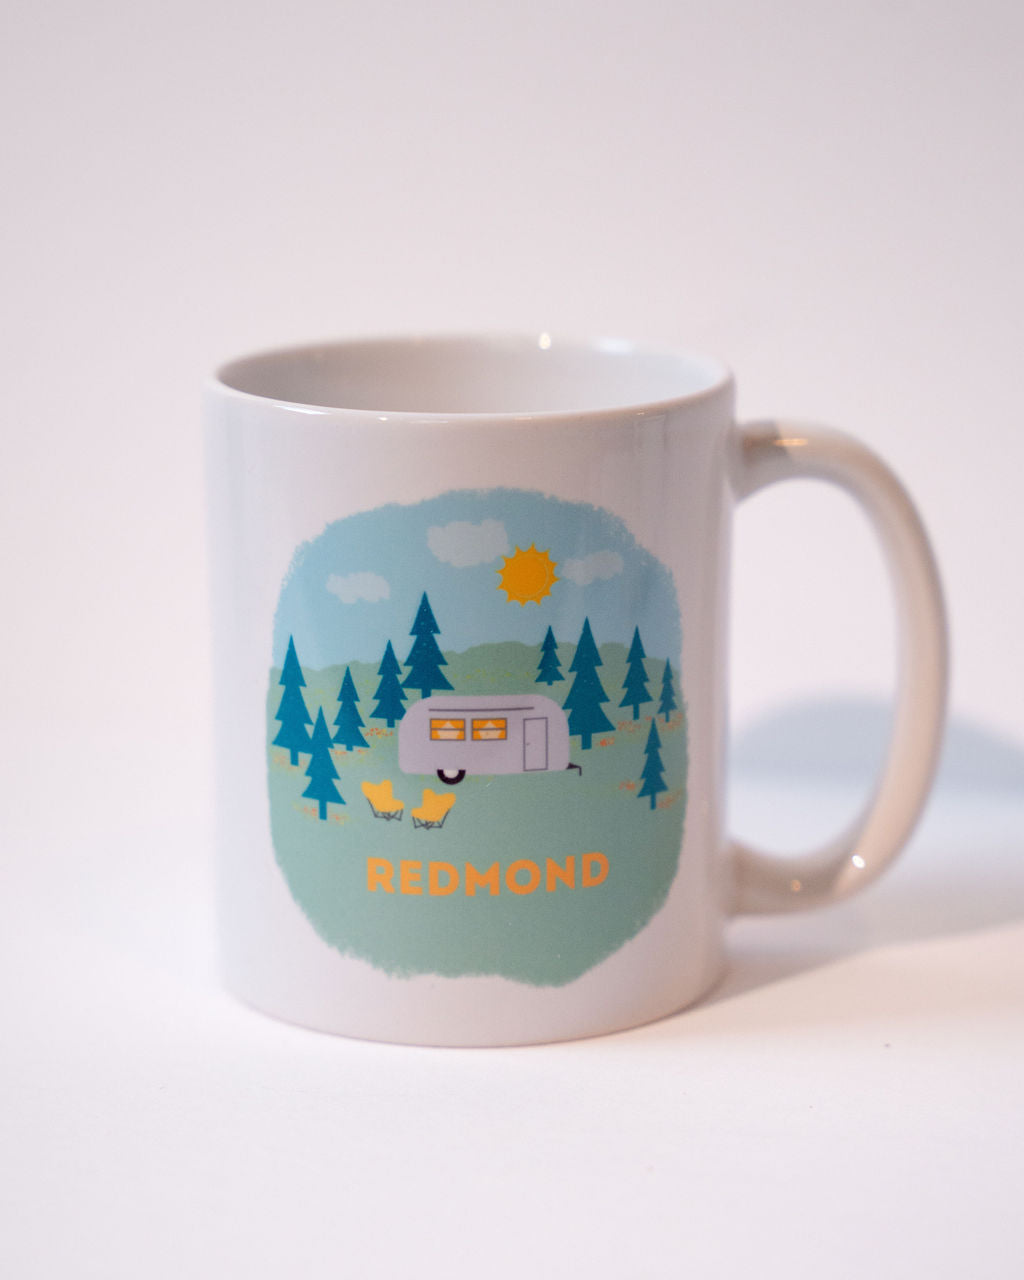 Redmond ceramic mug - trailer